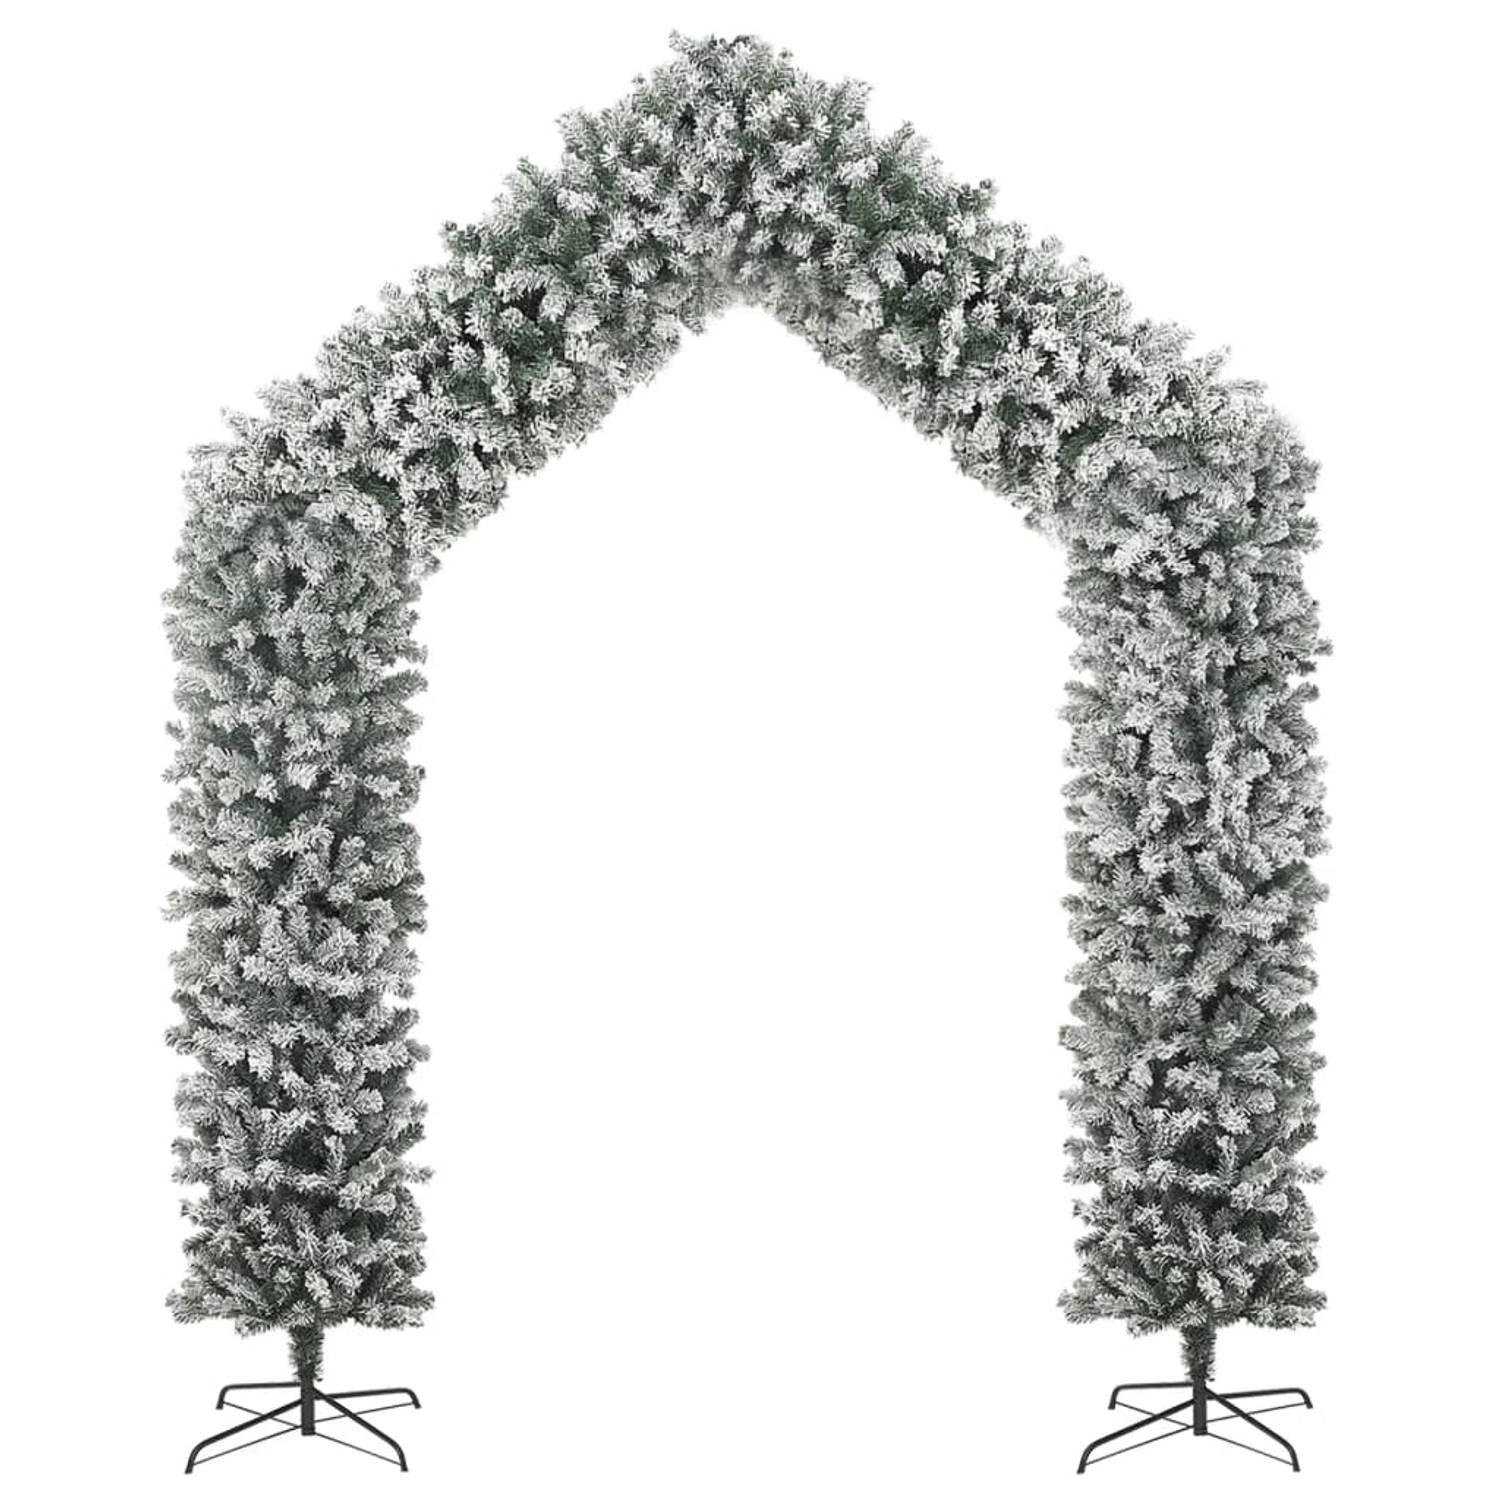 The Living Store Kerstboog - Stalen standaard - PVC uiteinden - Zeer duurzaam - Wit en groen - 215 x 270 cm - 115 x